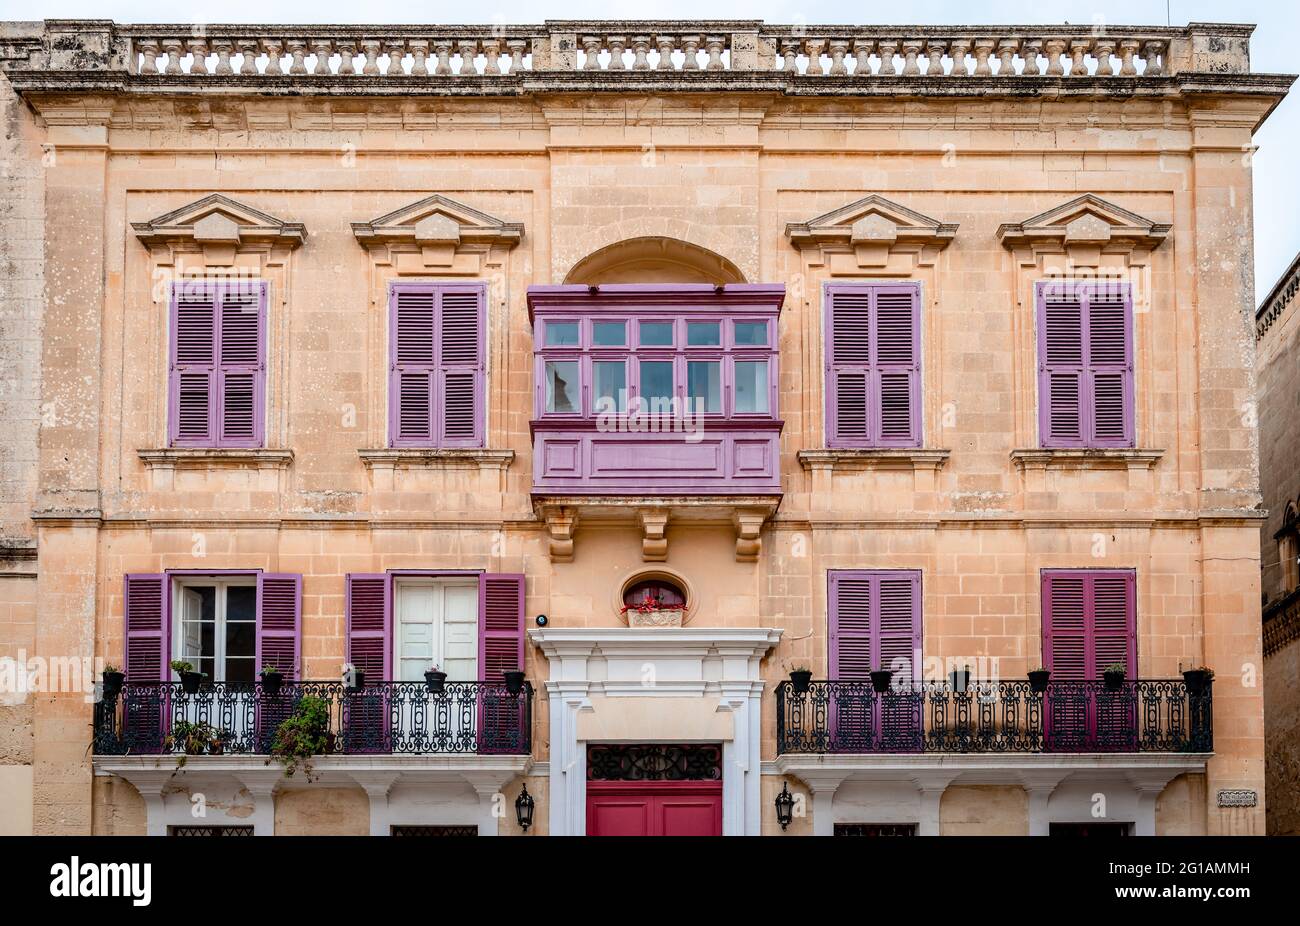 Ancien bâtiment médiéval situé dans la rue Villegaignon, face à la place Saint-Paul, à Mdina, Malte. Architecture maltaise typique. Banque D'Images